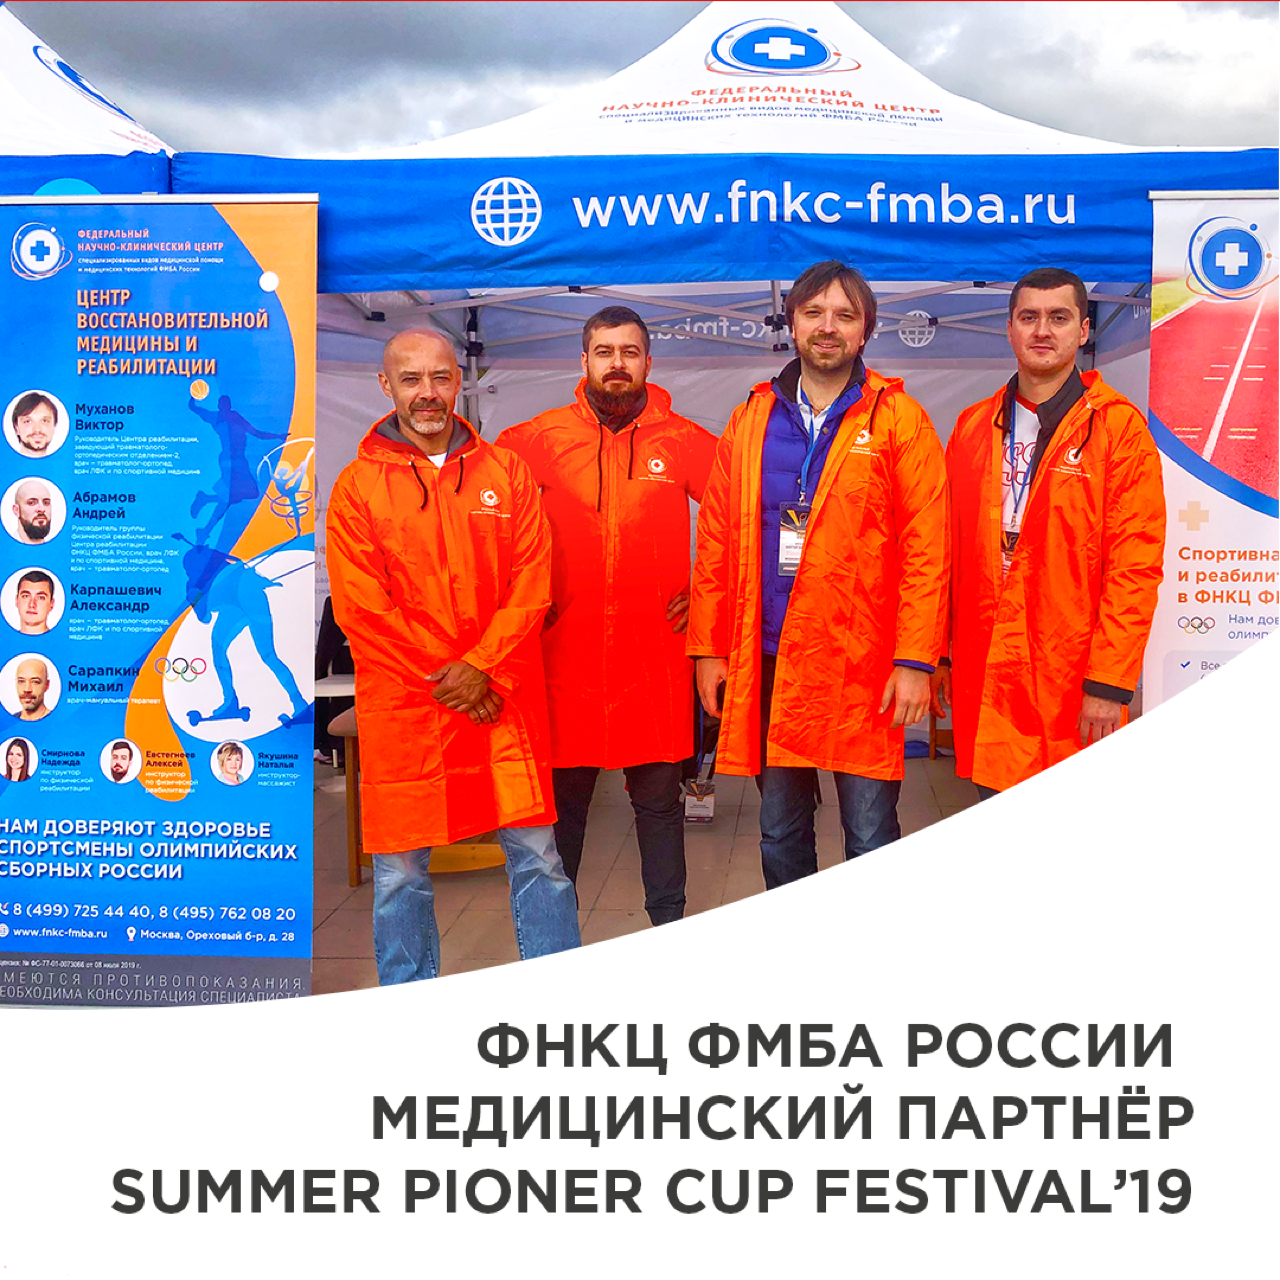  ФНКЦ ФМБА России стал медицинским партнером «Summer Pioner Cup Festival' 19»